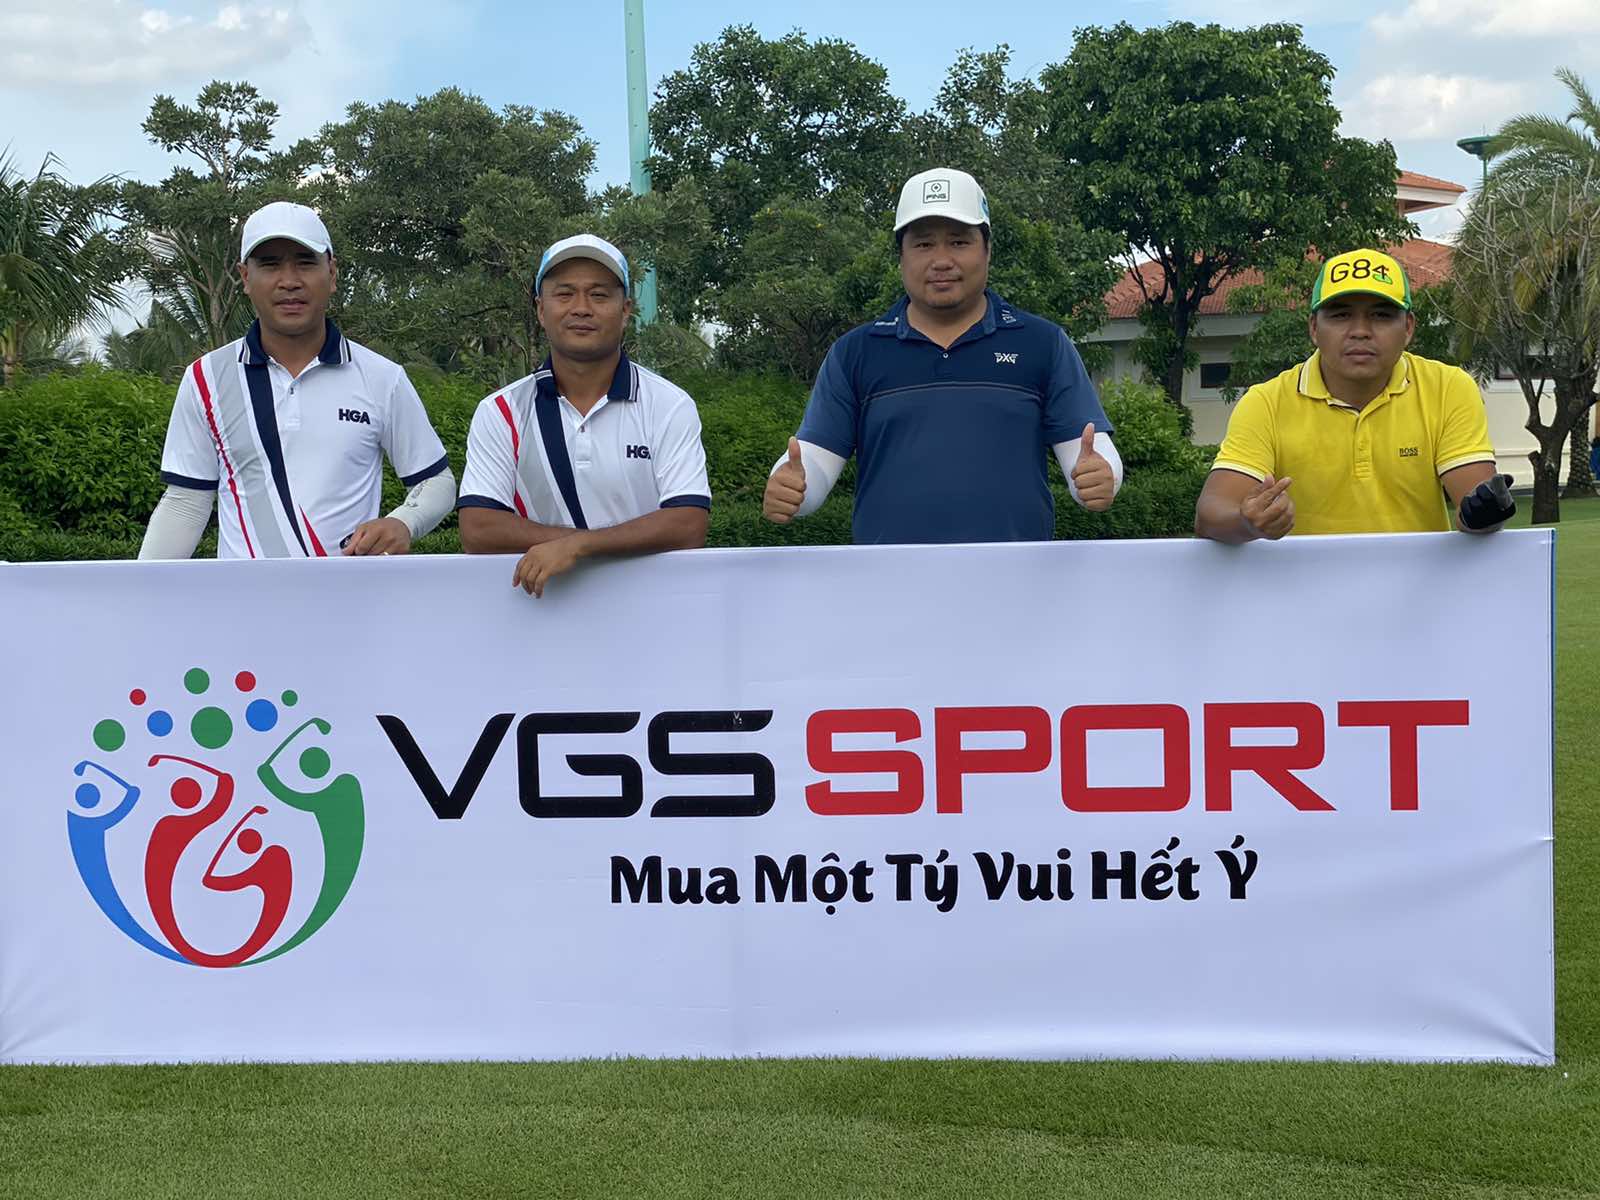 VGS Sport và Bảo hiểm PVI hợp tác ra mắt gói bảo hiểm HIO cho golfer.